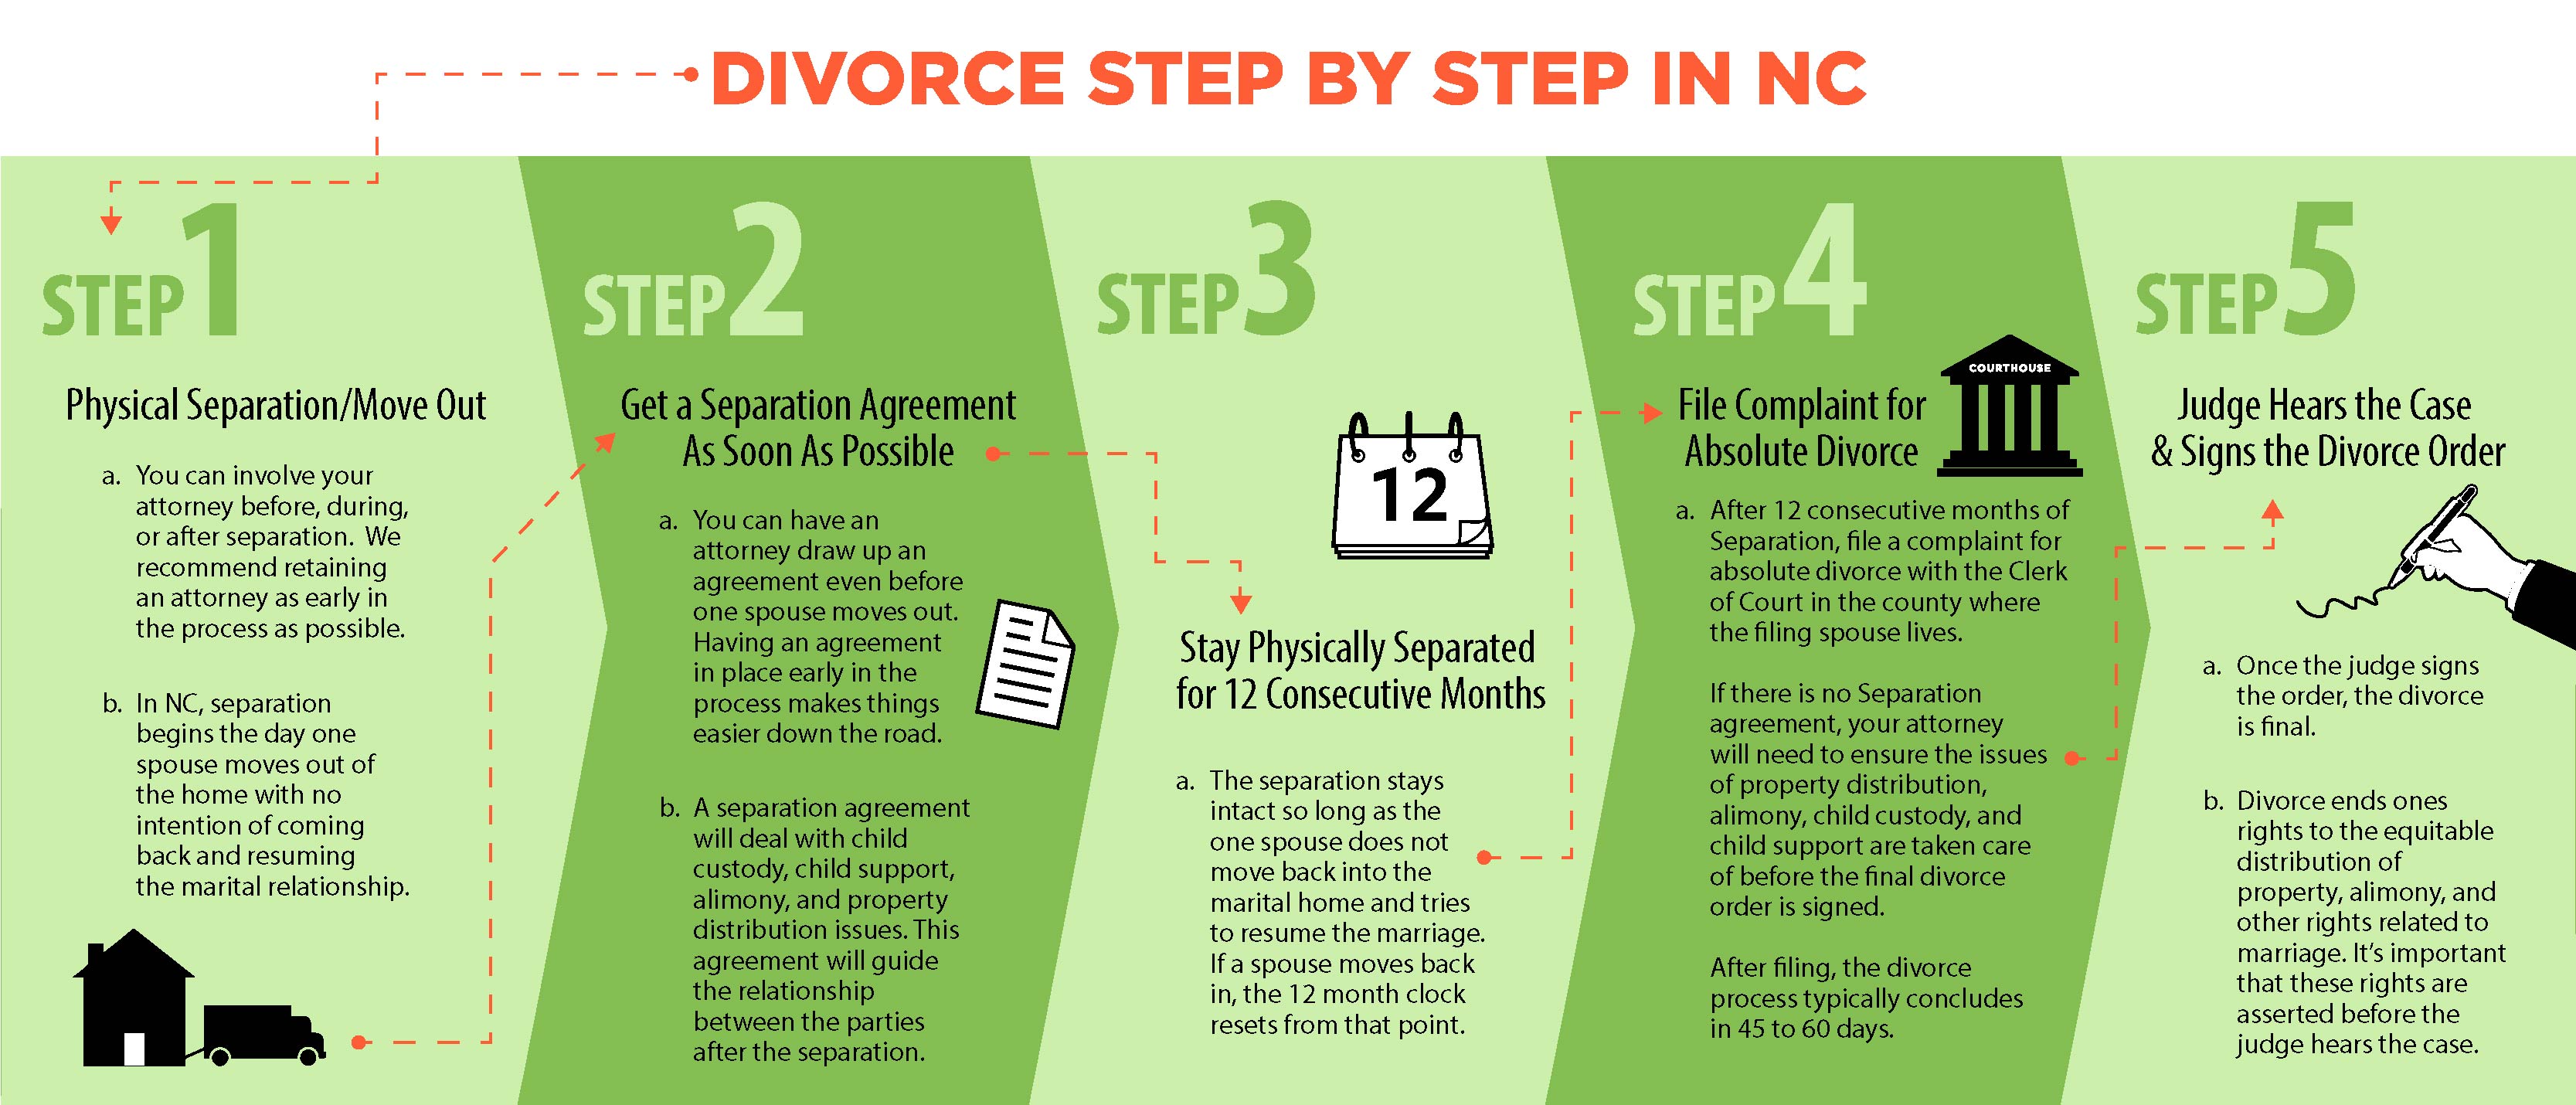 Steps of Divorce in North Carolina